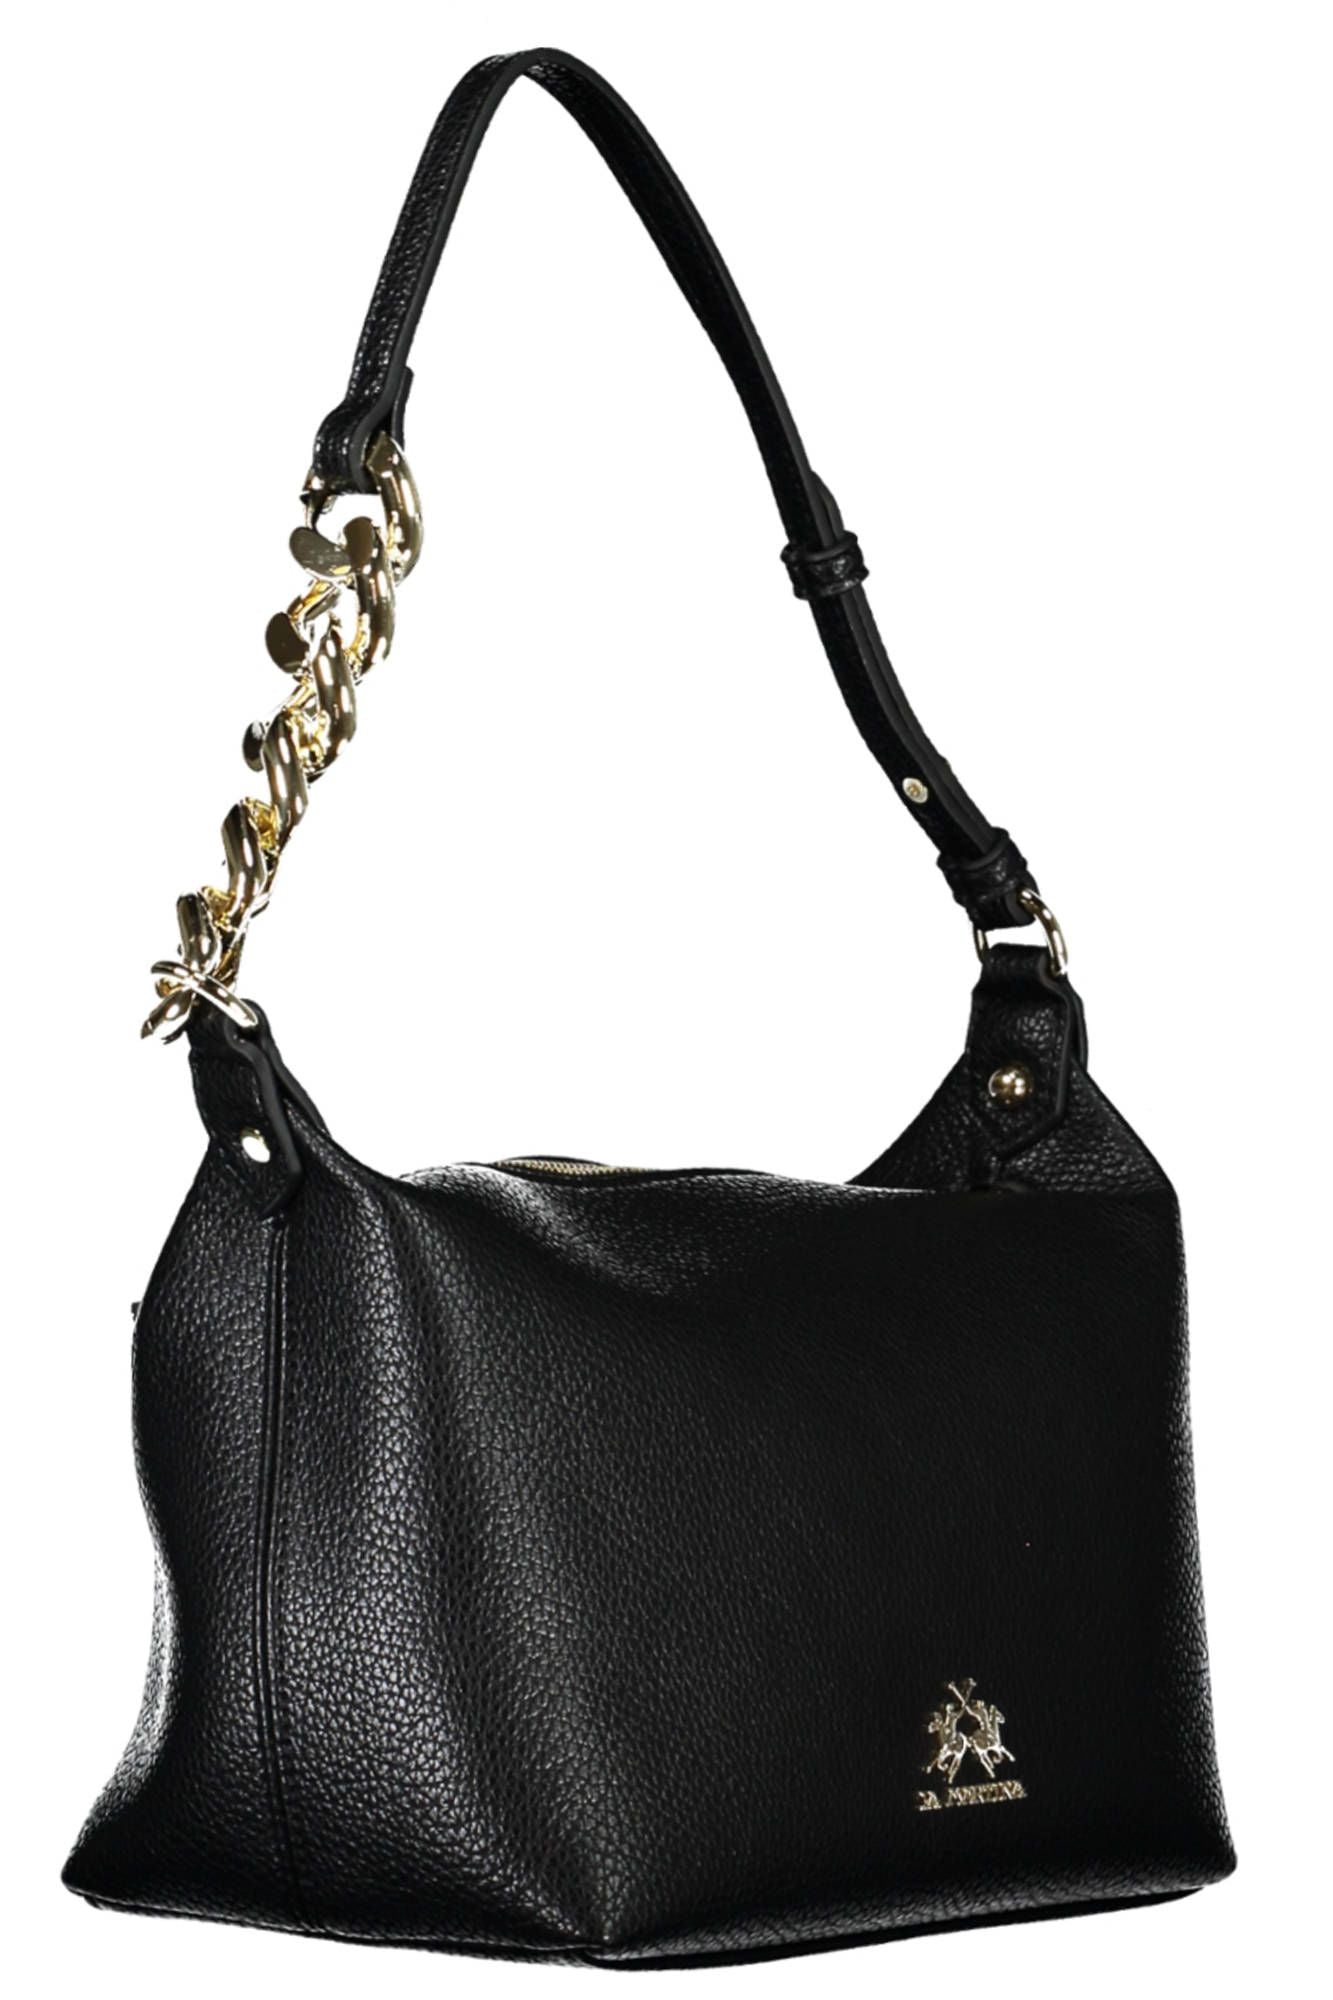 Chic Black Shoulder Bag with Contrasting Details